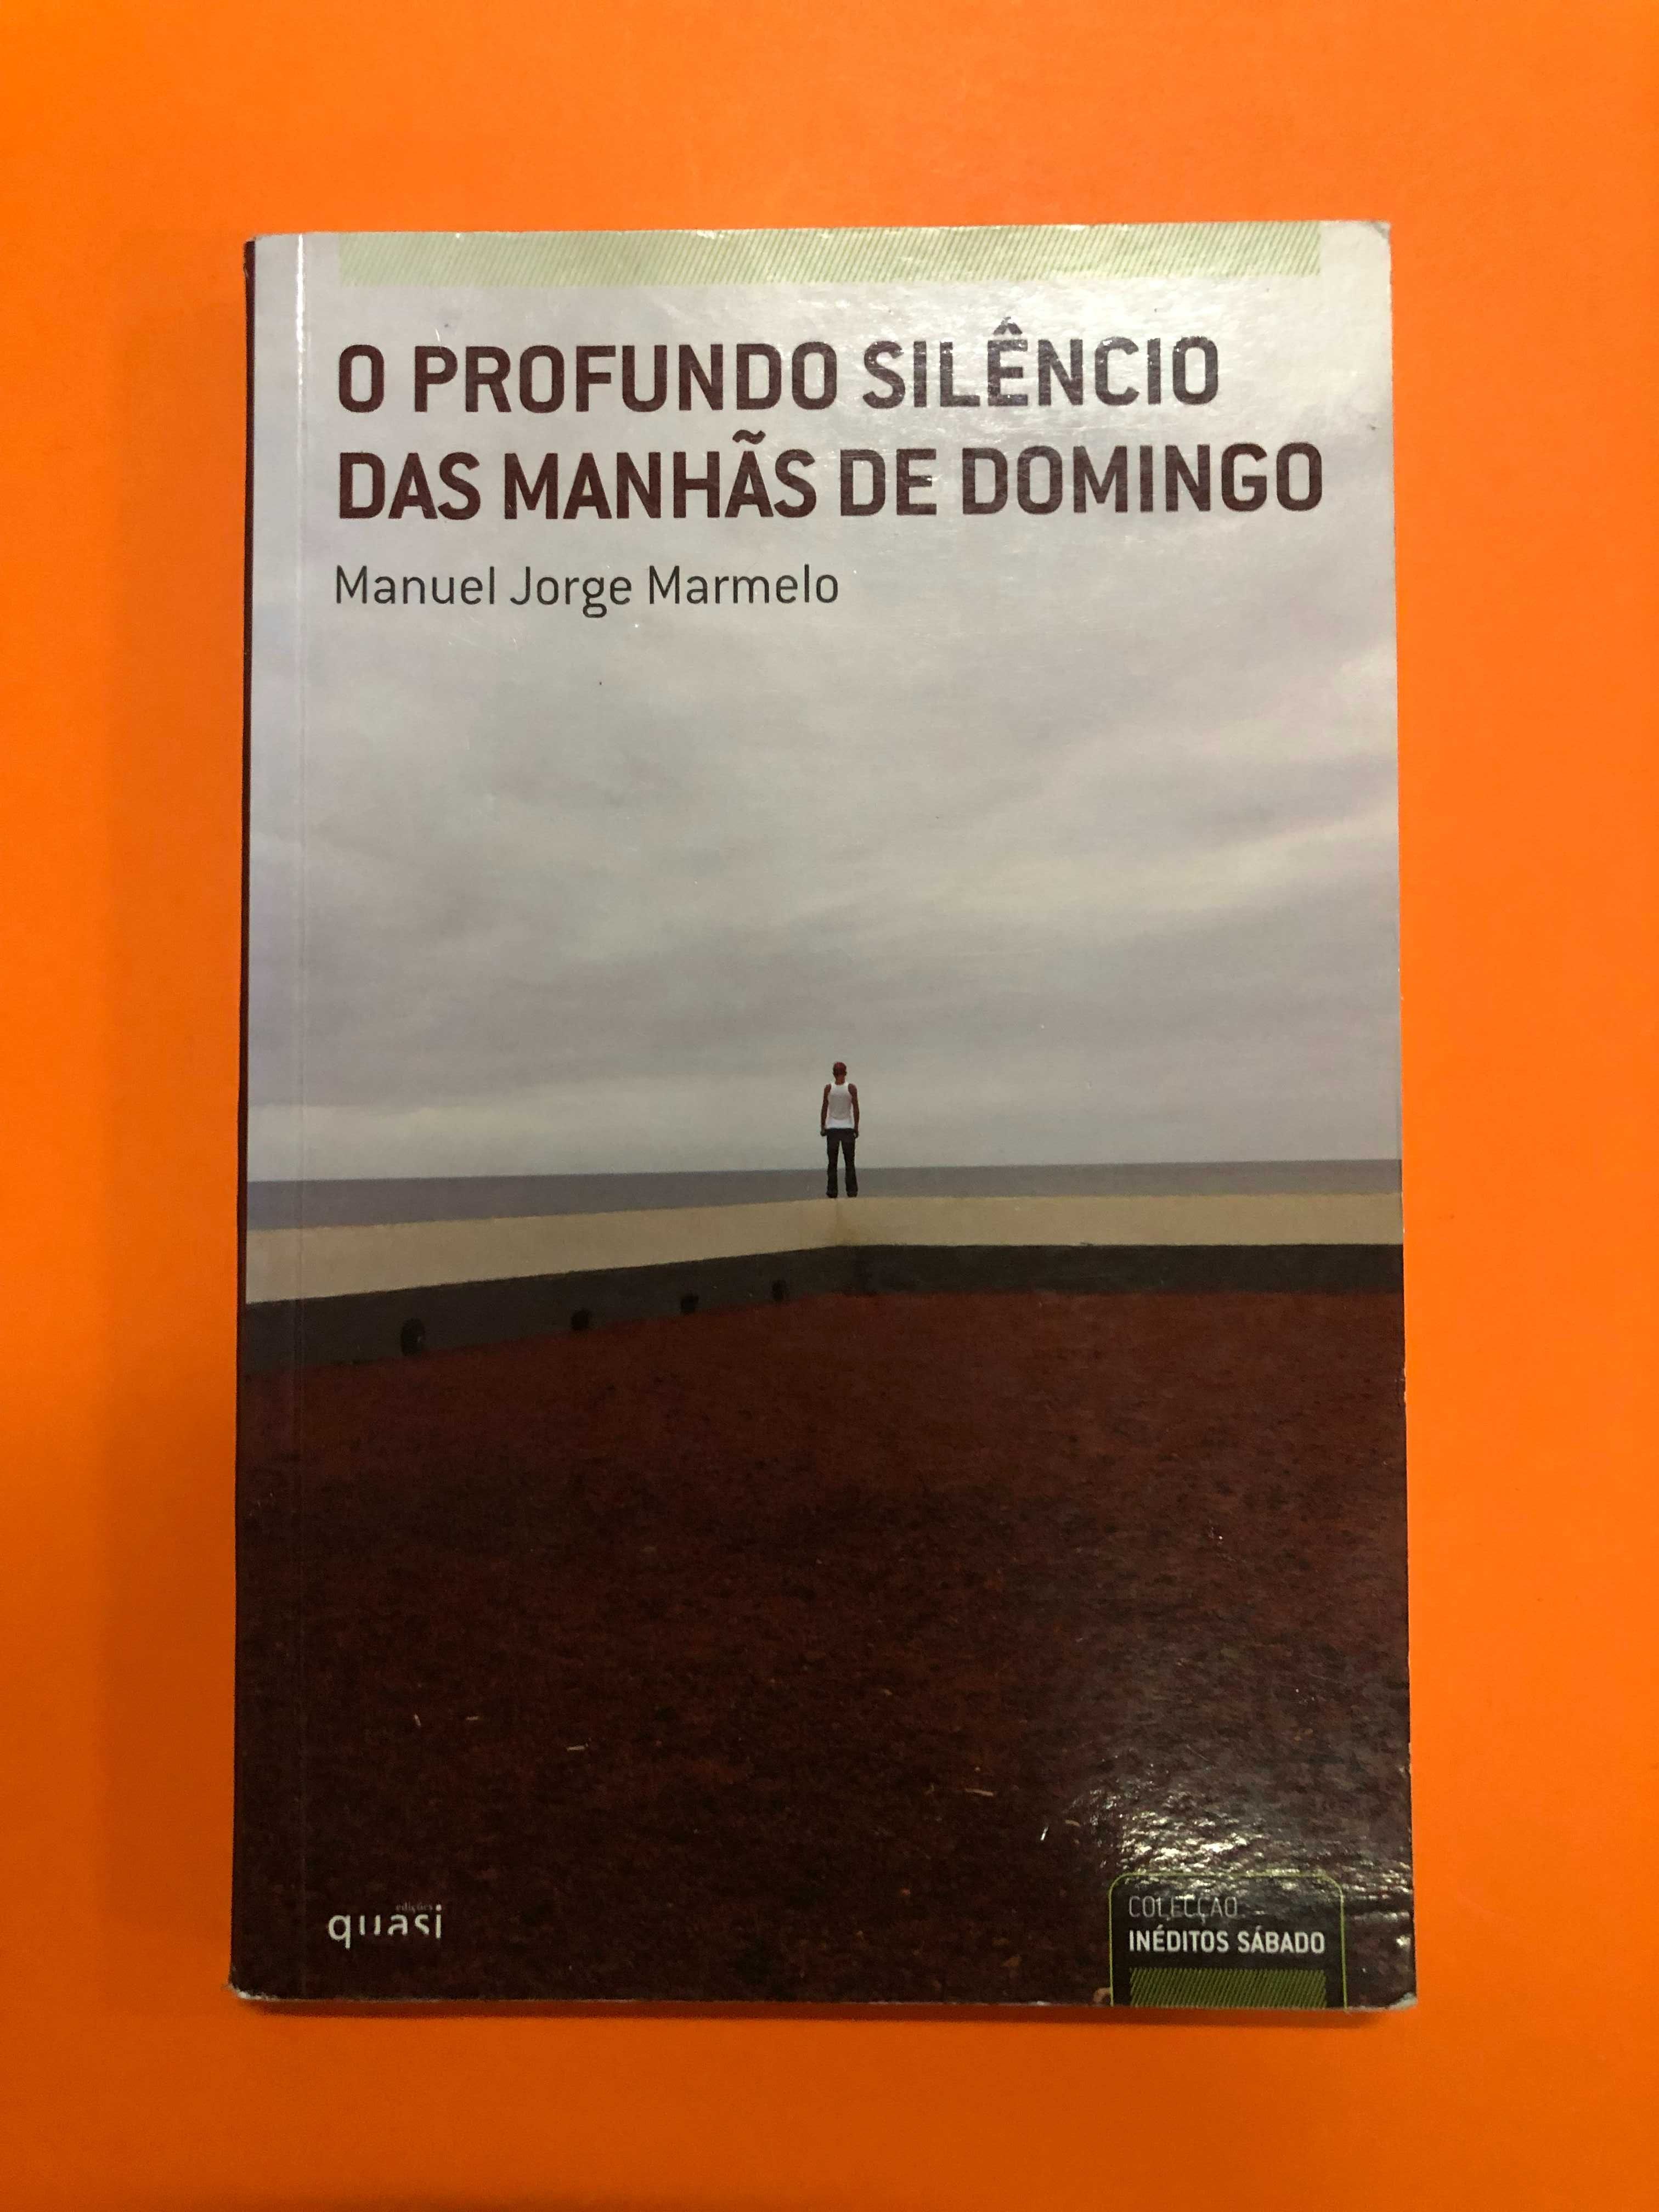 O profundo silêncio das manhãs de domingo - Manuel Jorge Marmelo